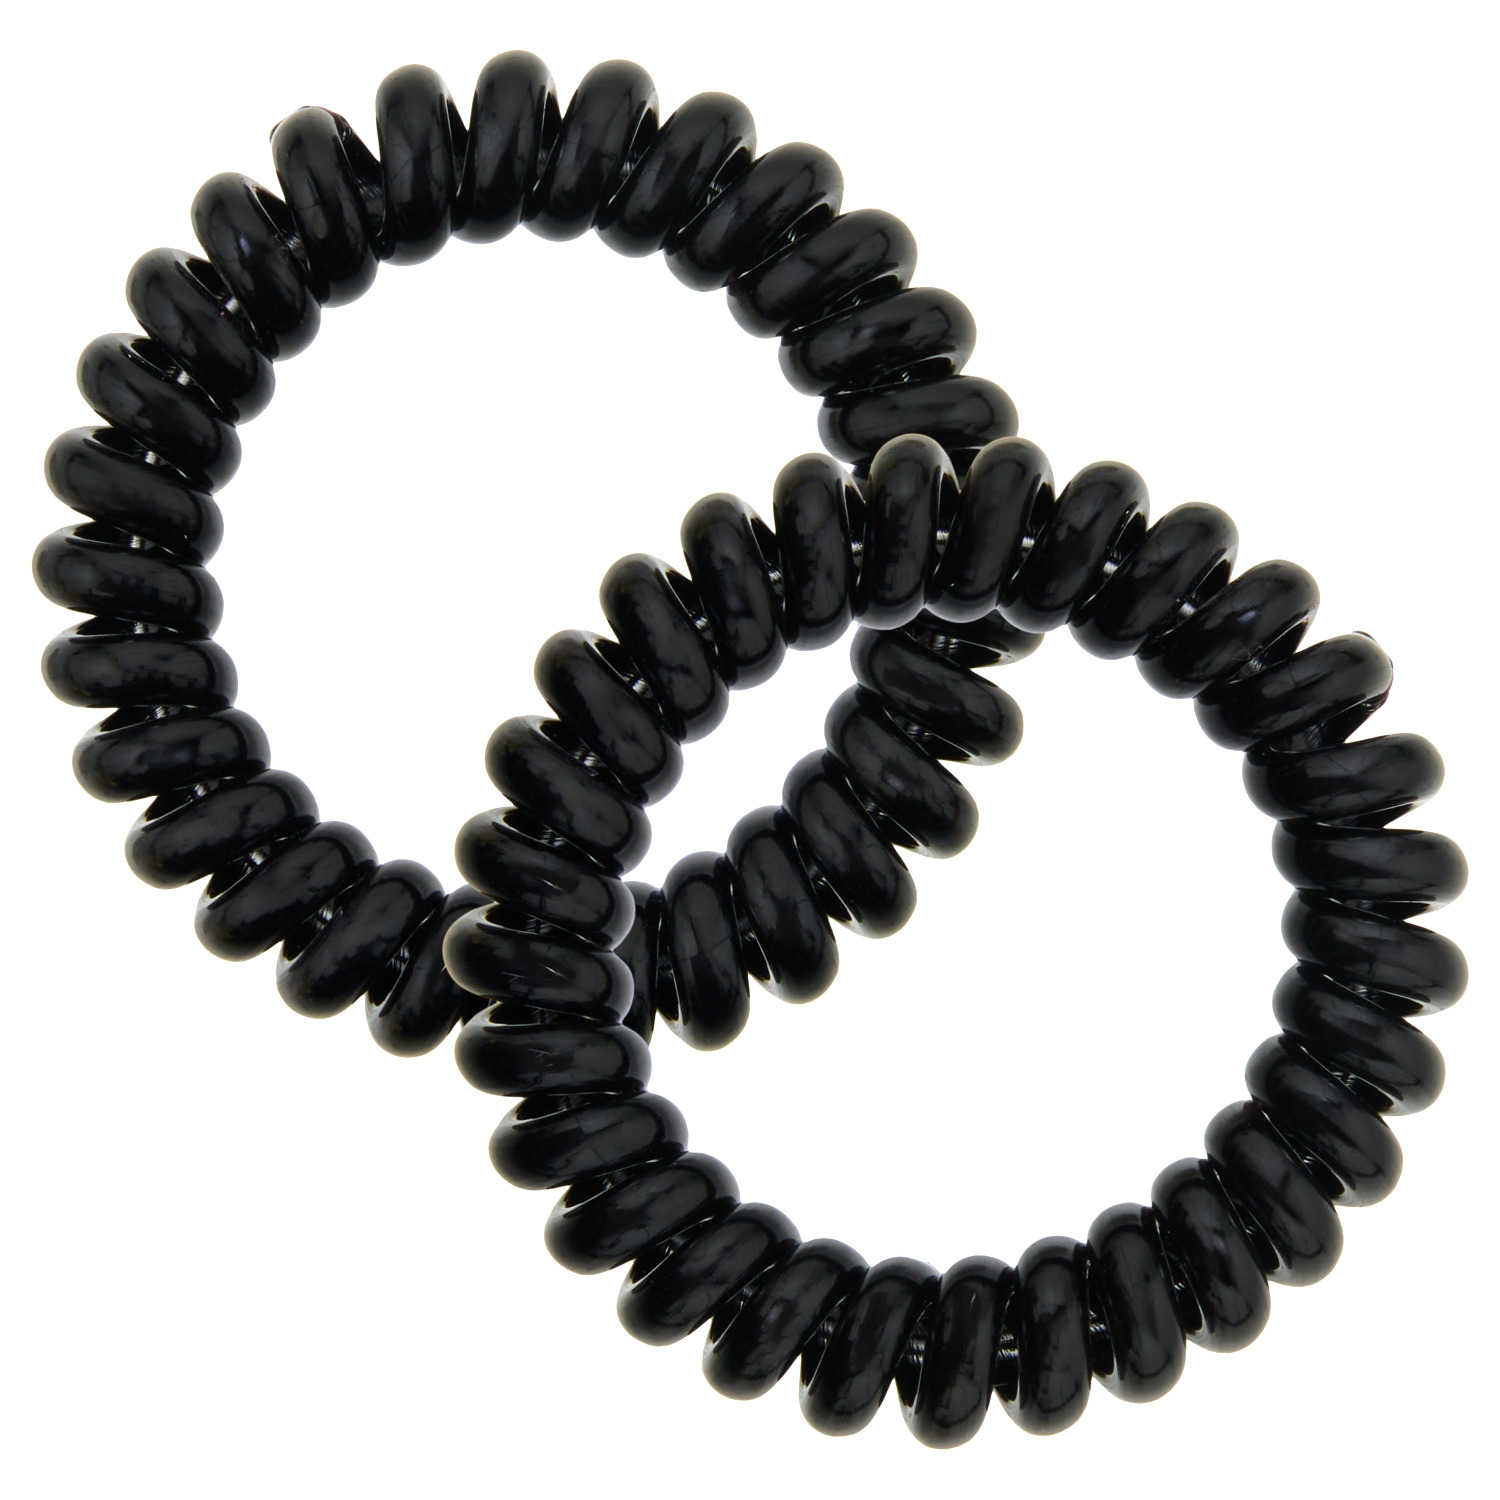 Spiral-Haargummis schwarz, 2 Stück